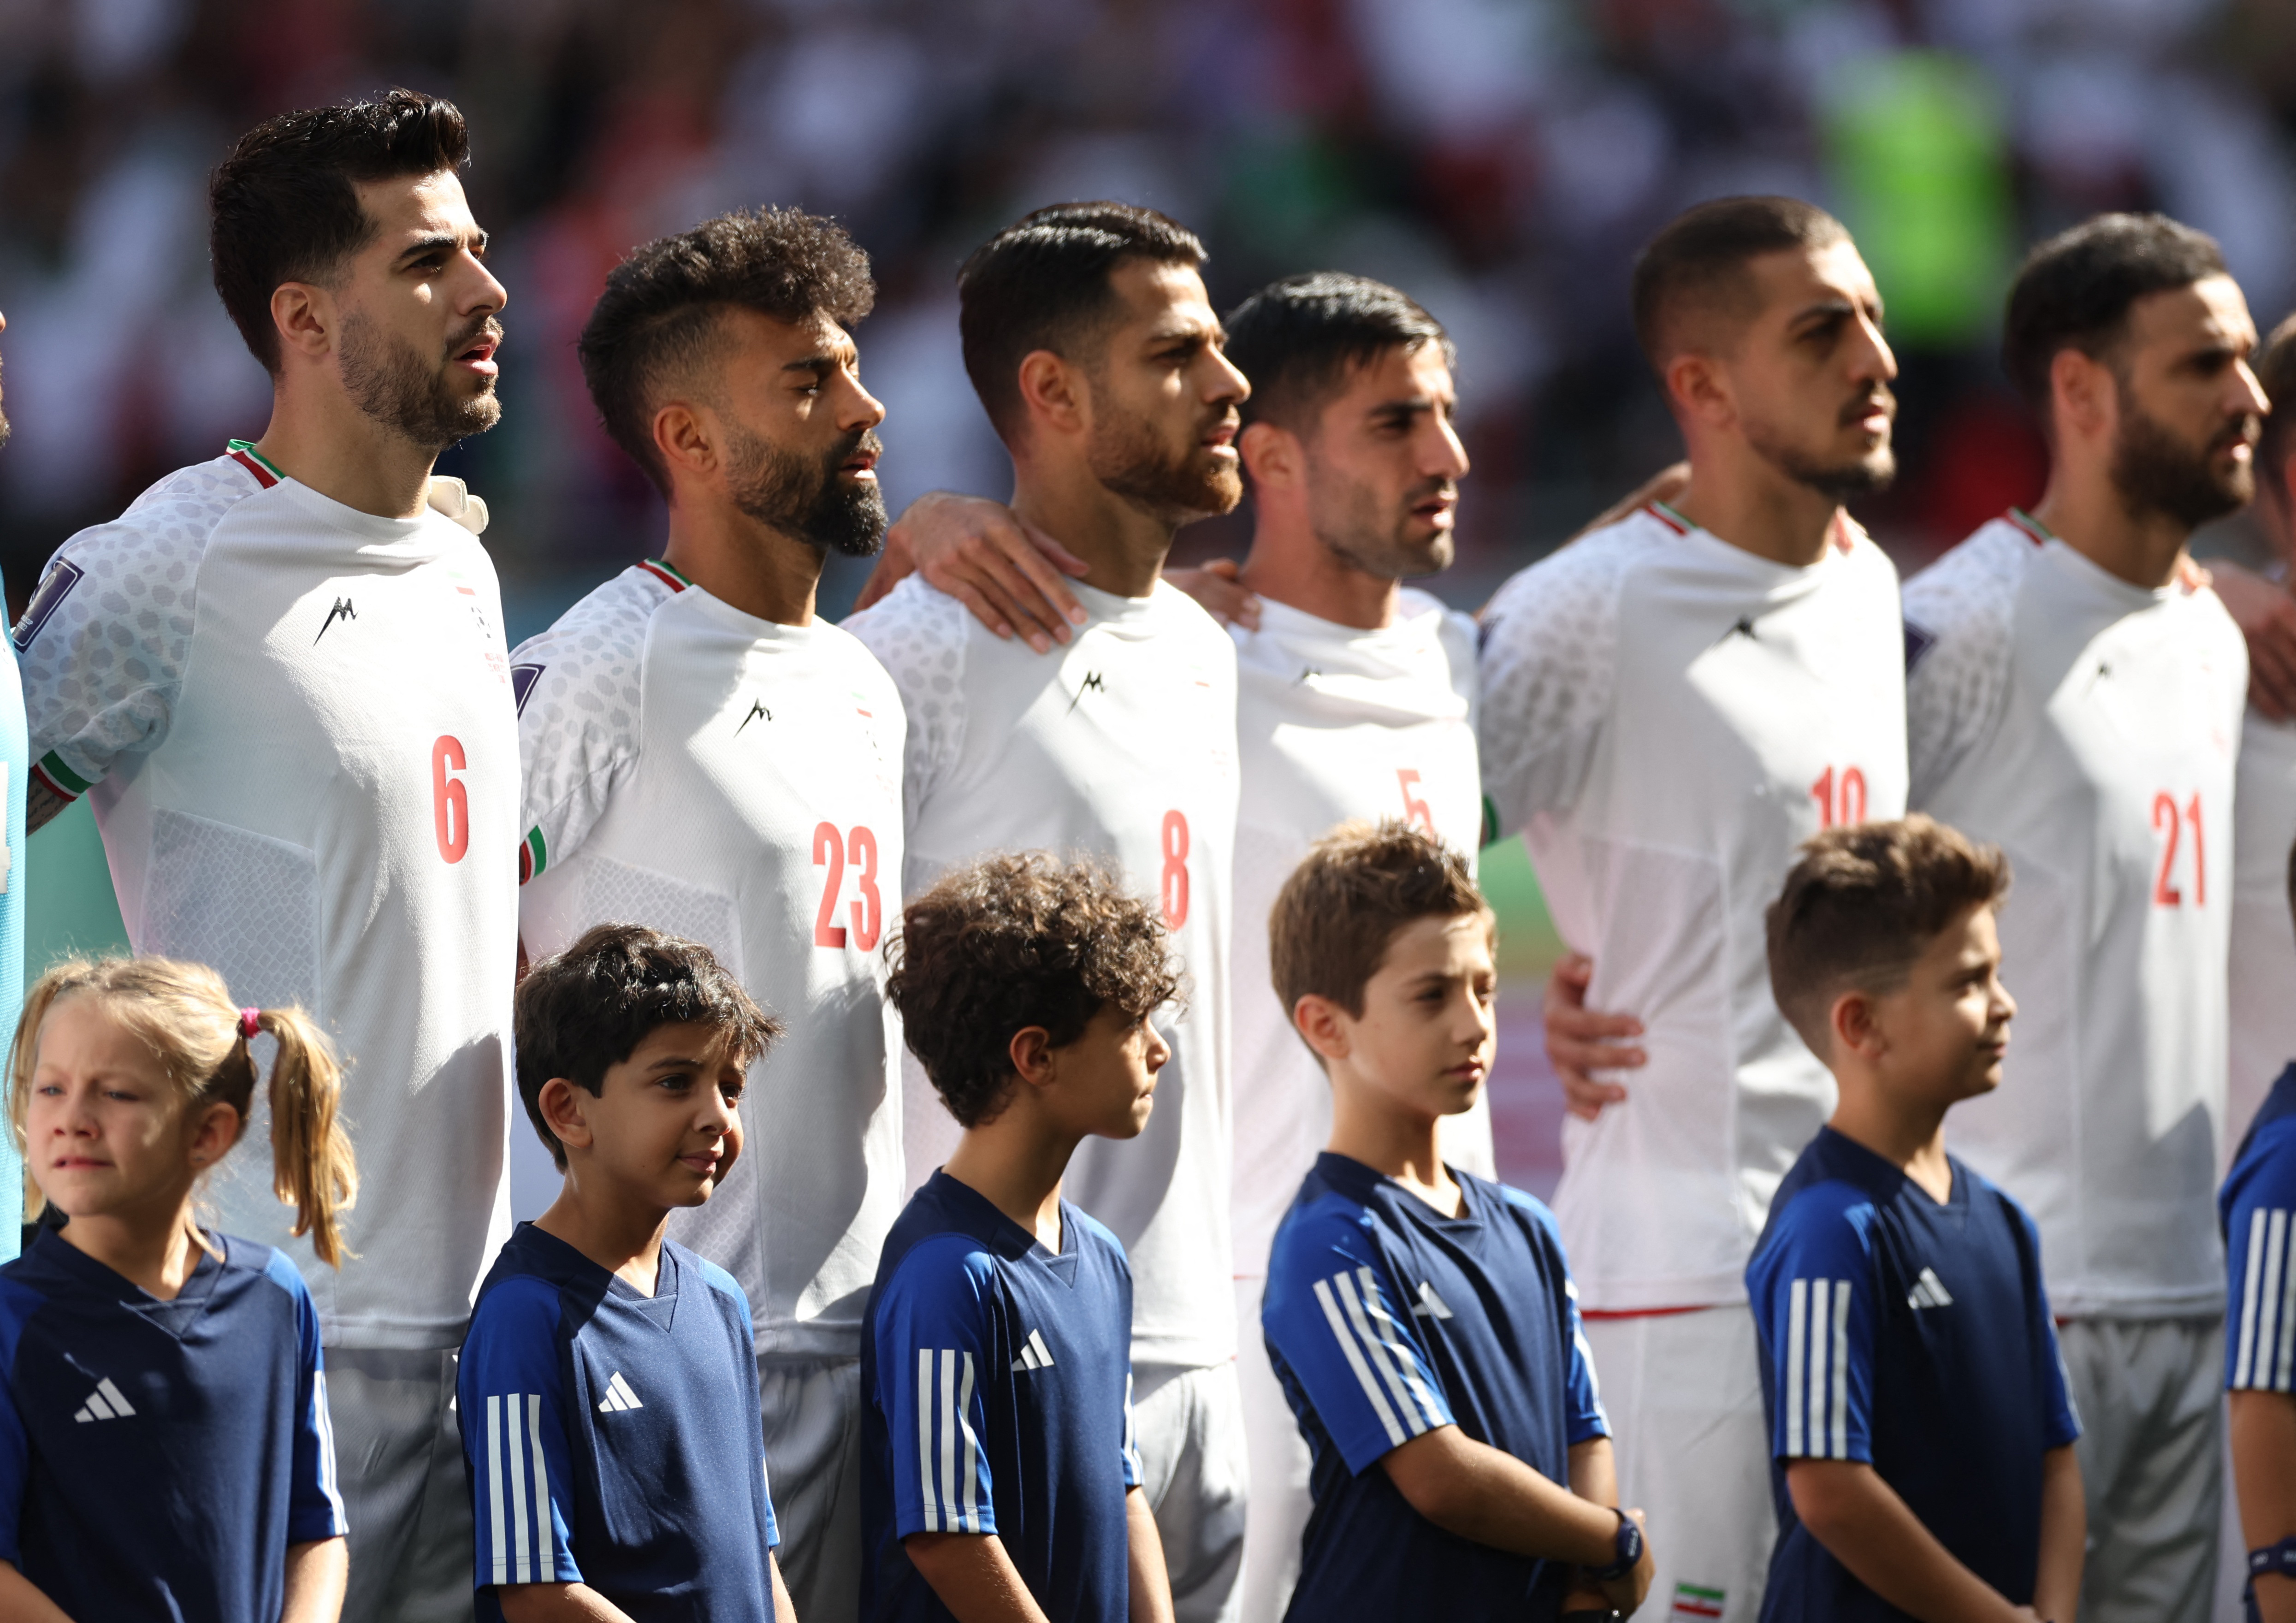 FIFA World Cup Qatar 2022 - Group B - Wales v Iran